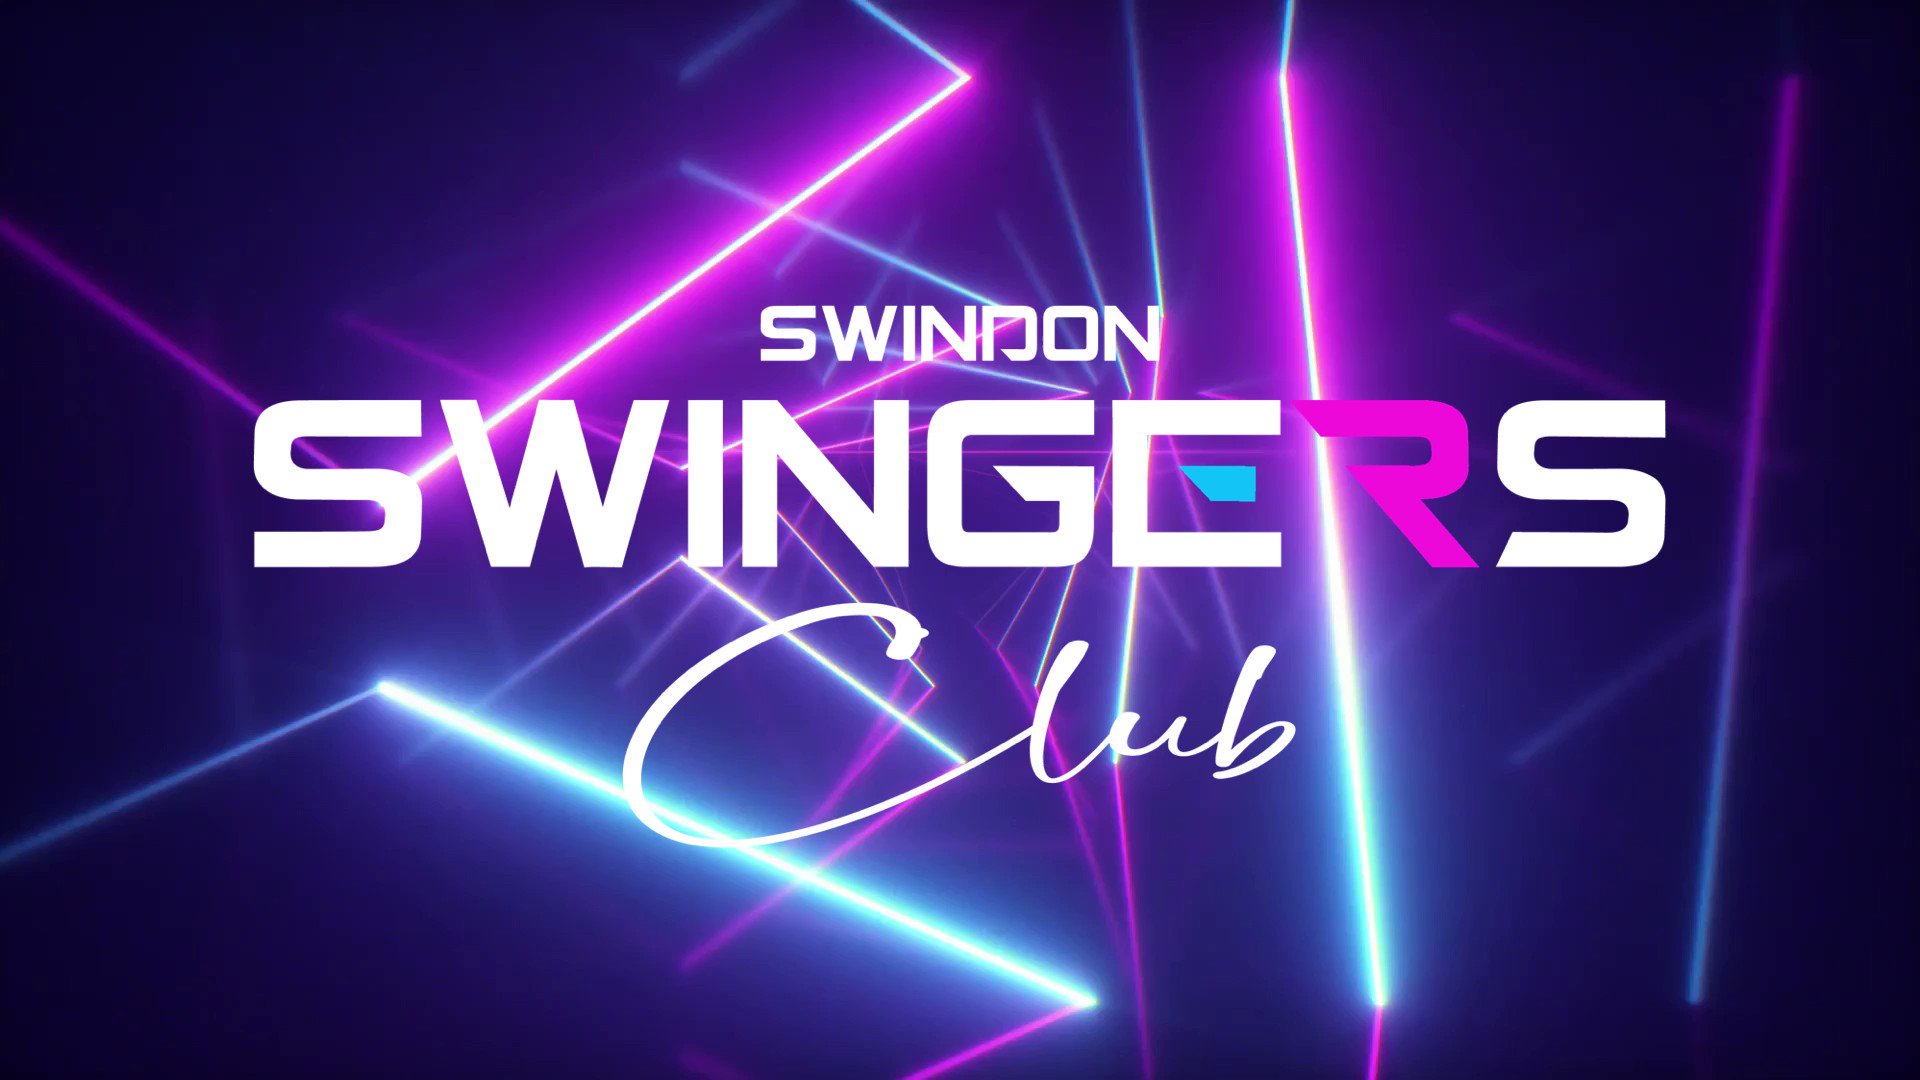 Swindon swingers club